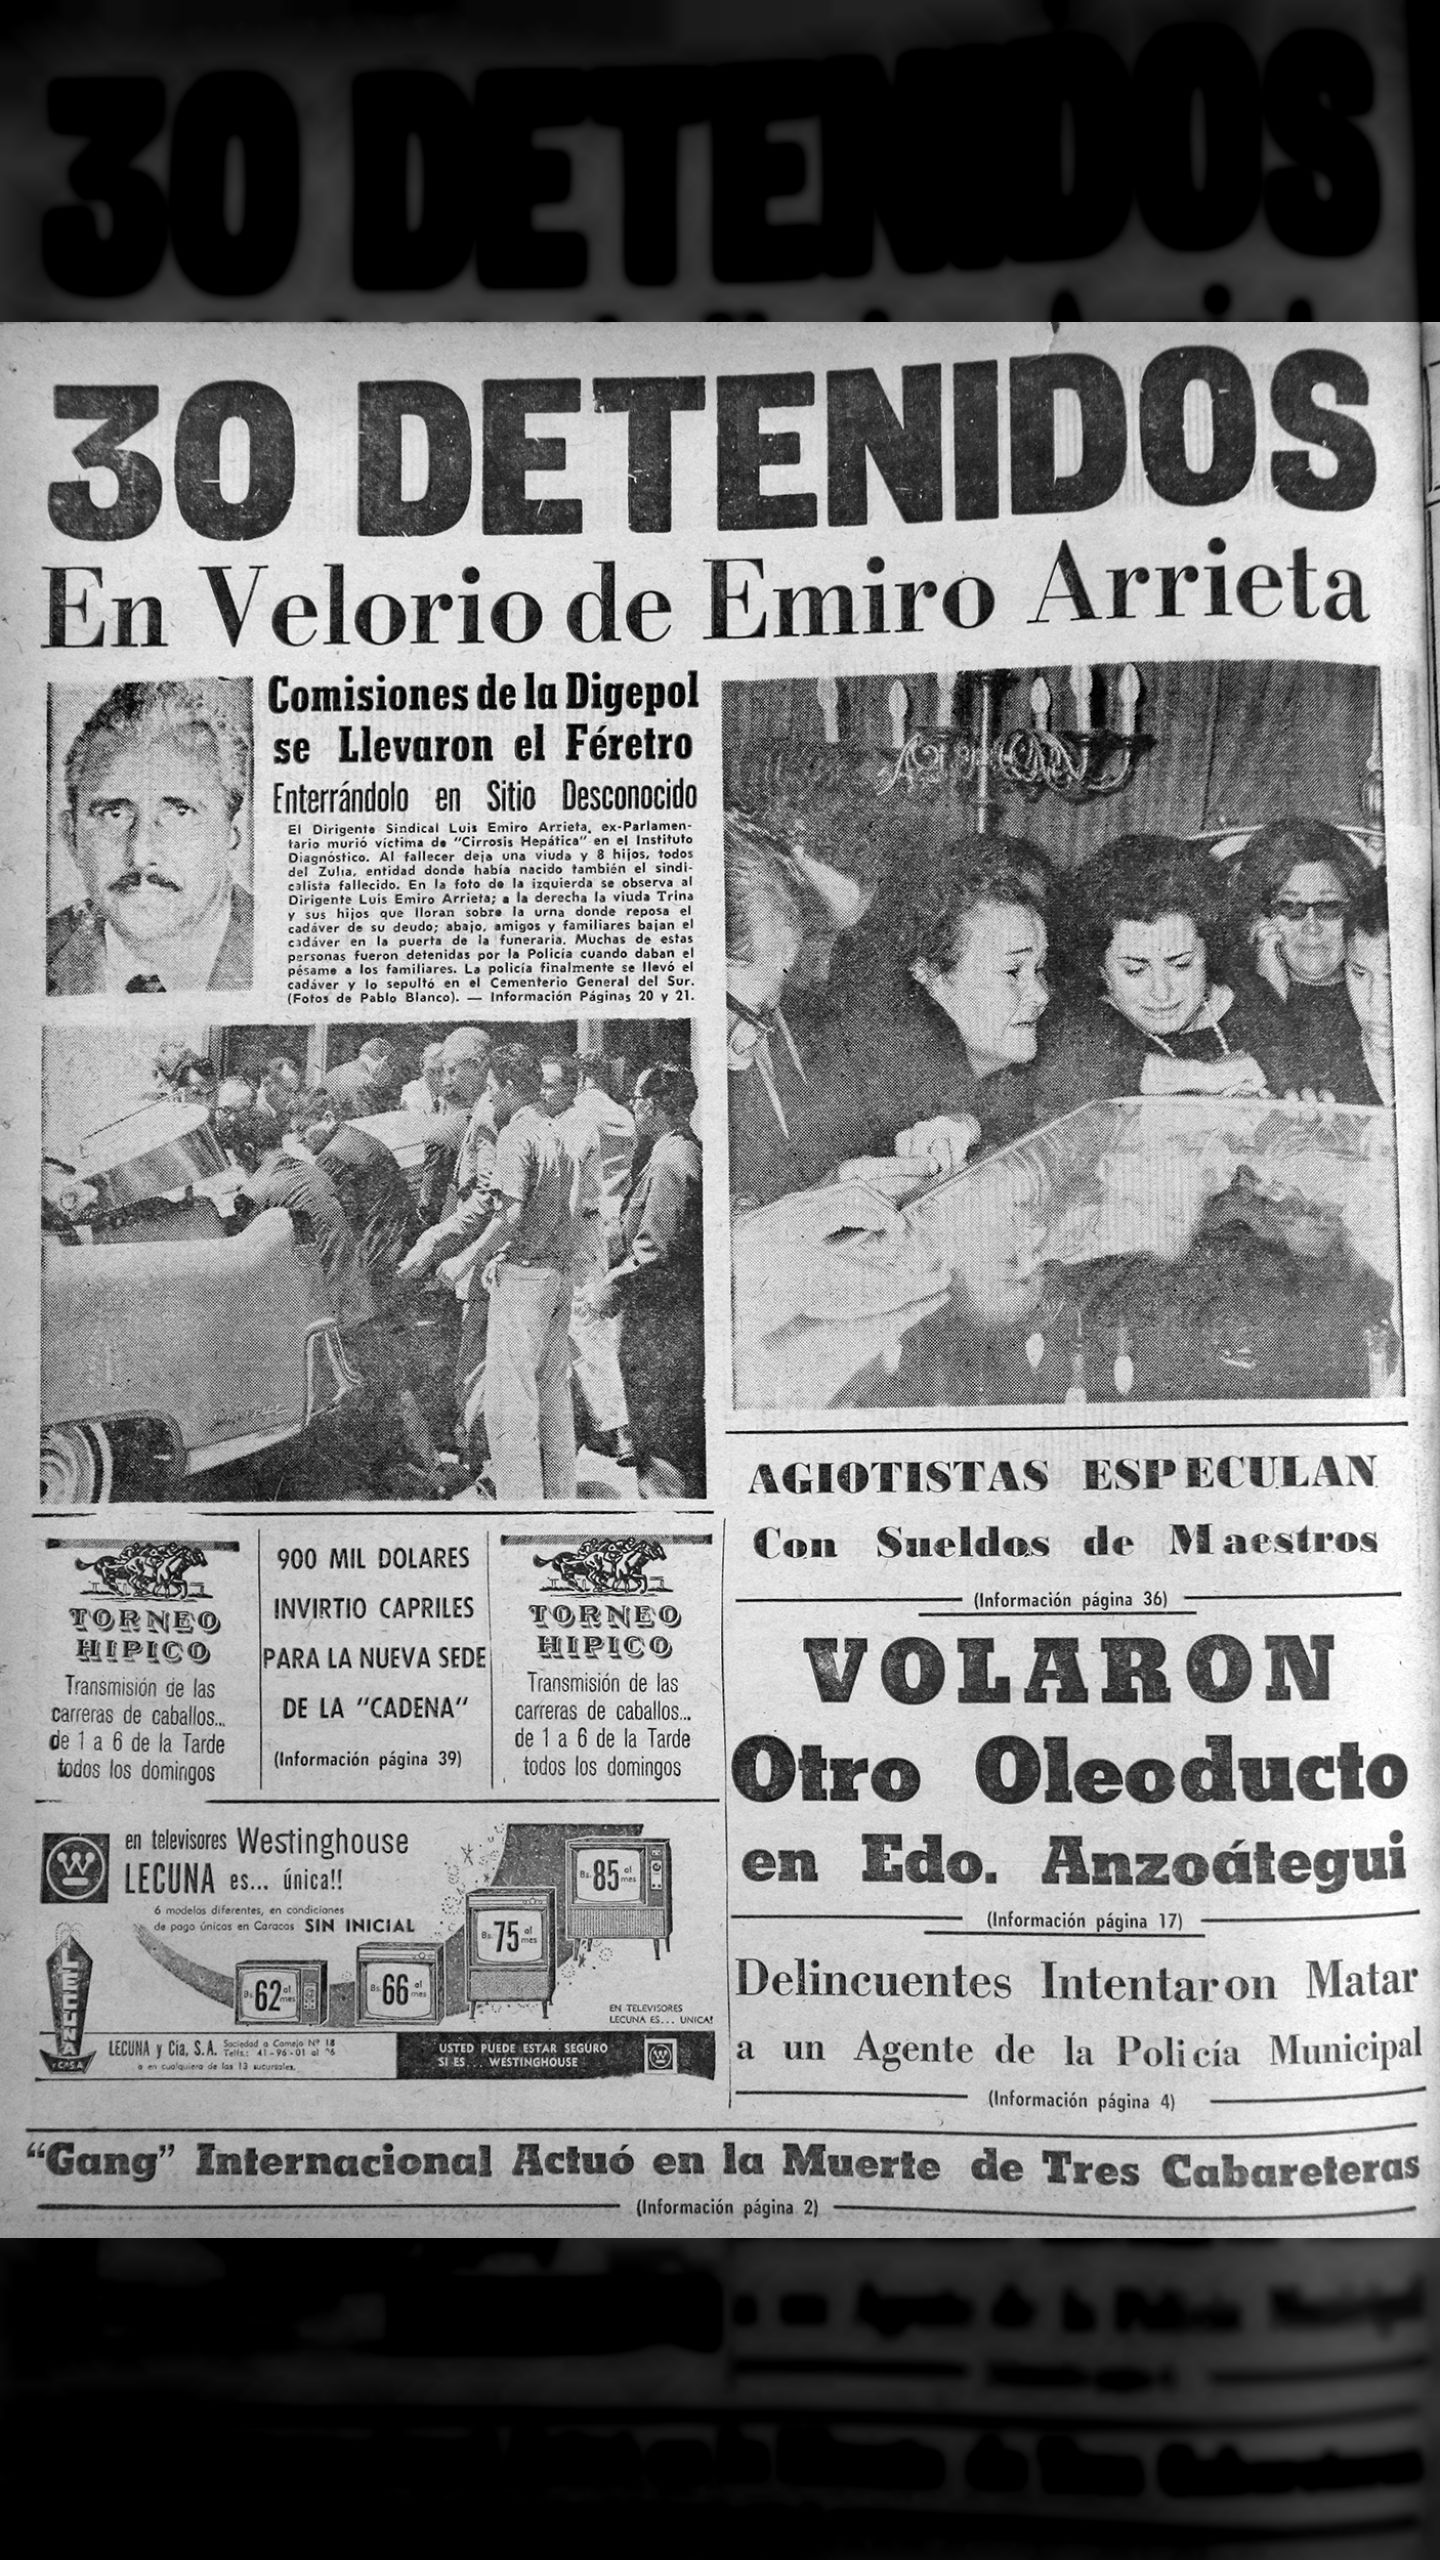 30 detenidos en el velorio de Emiro Arrieta (Últimas Noticias, 29 de julio  1965)